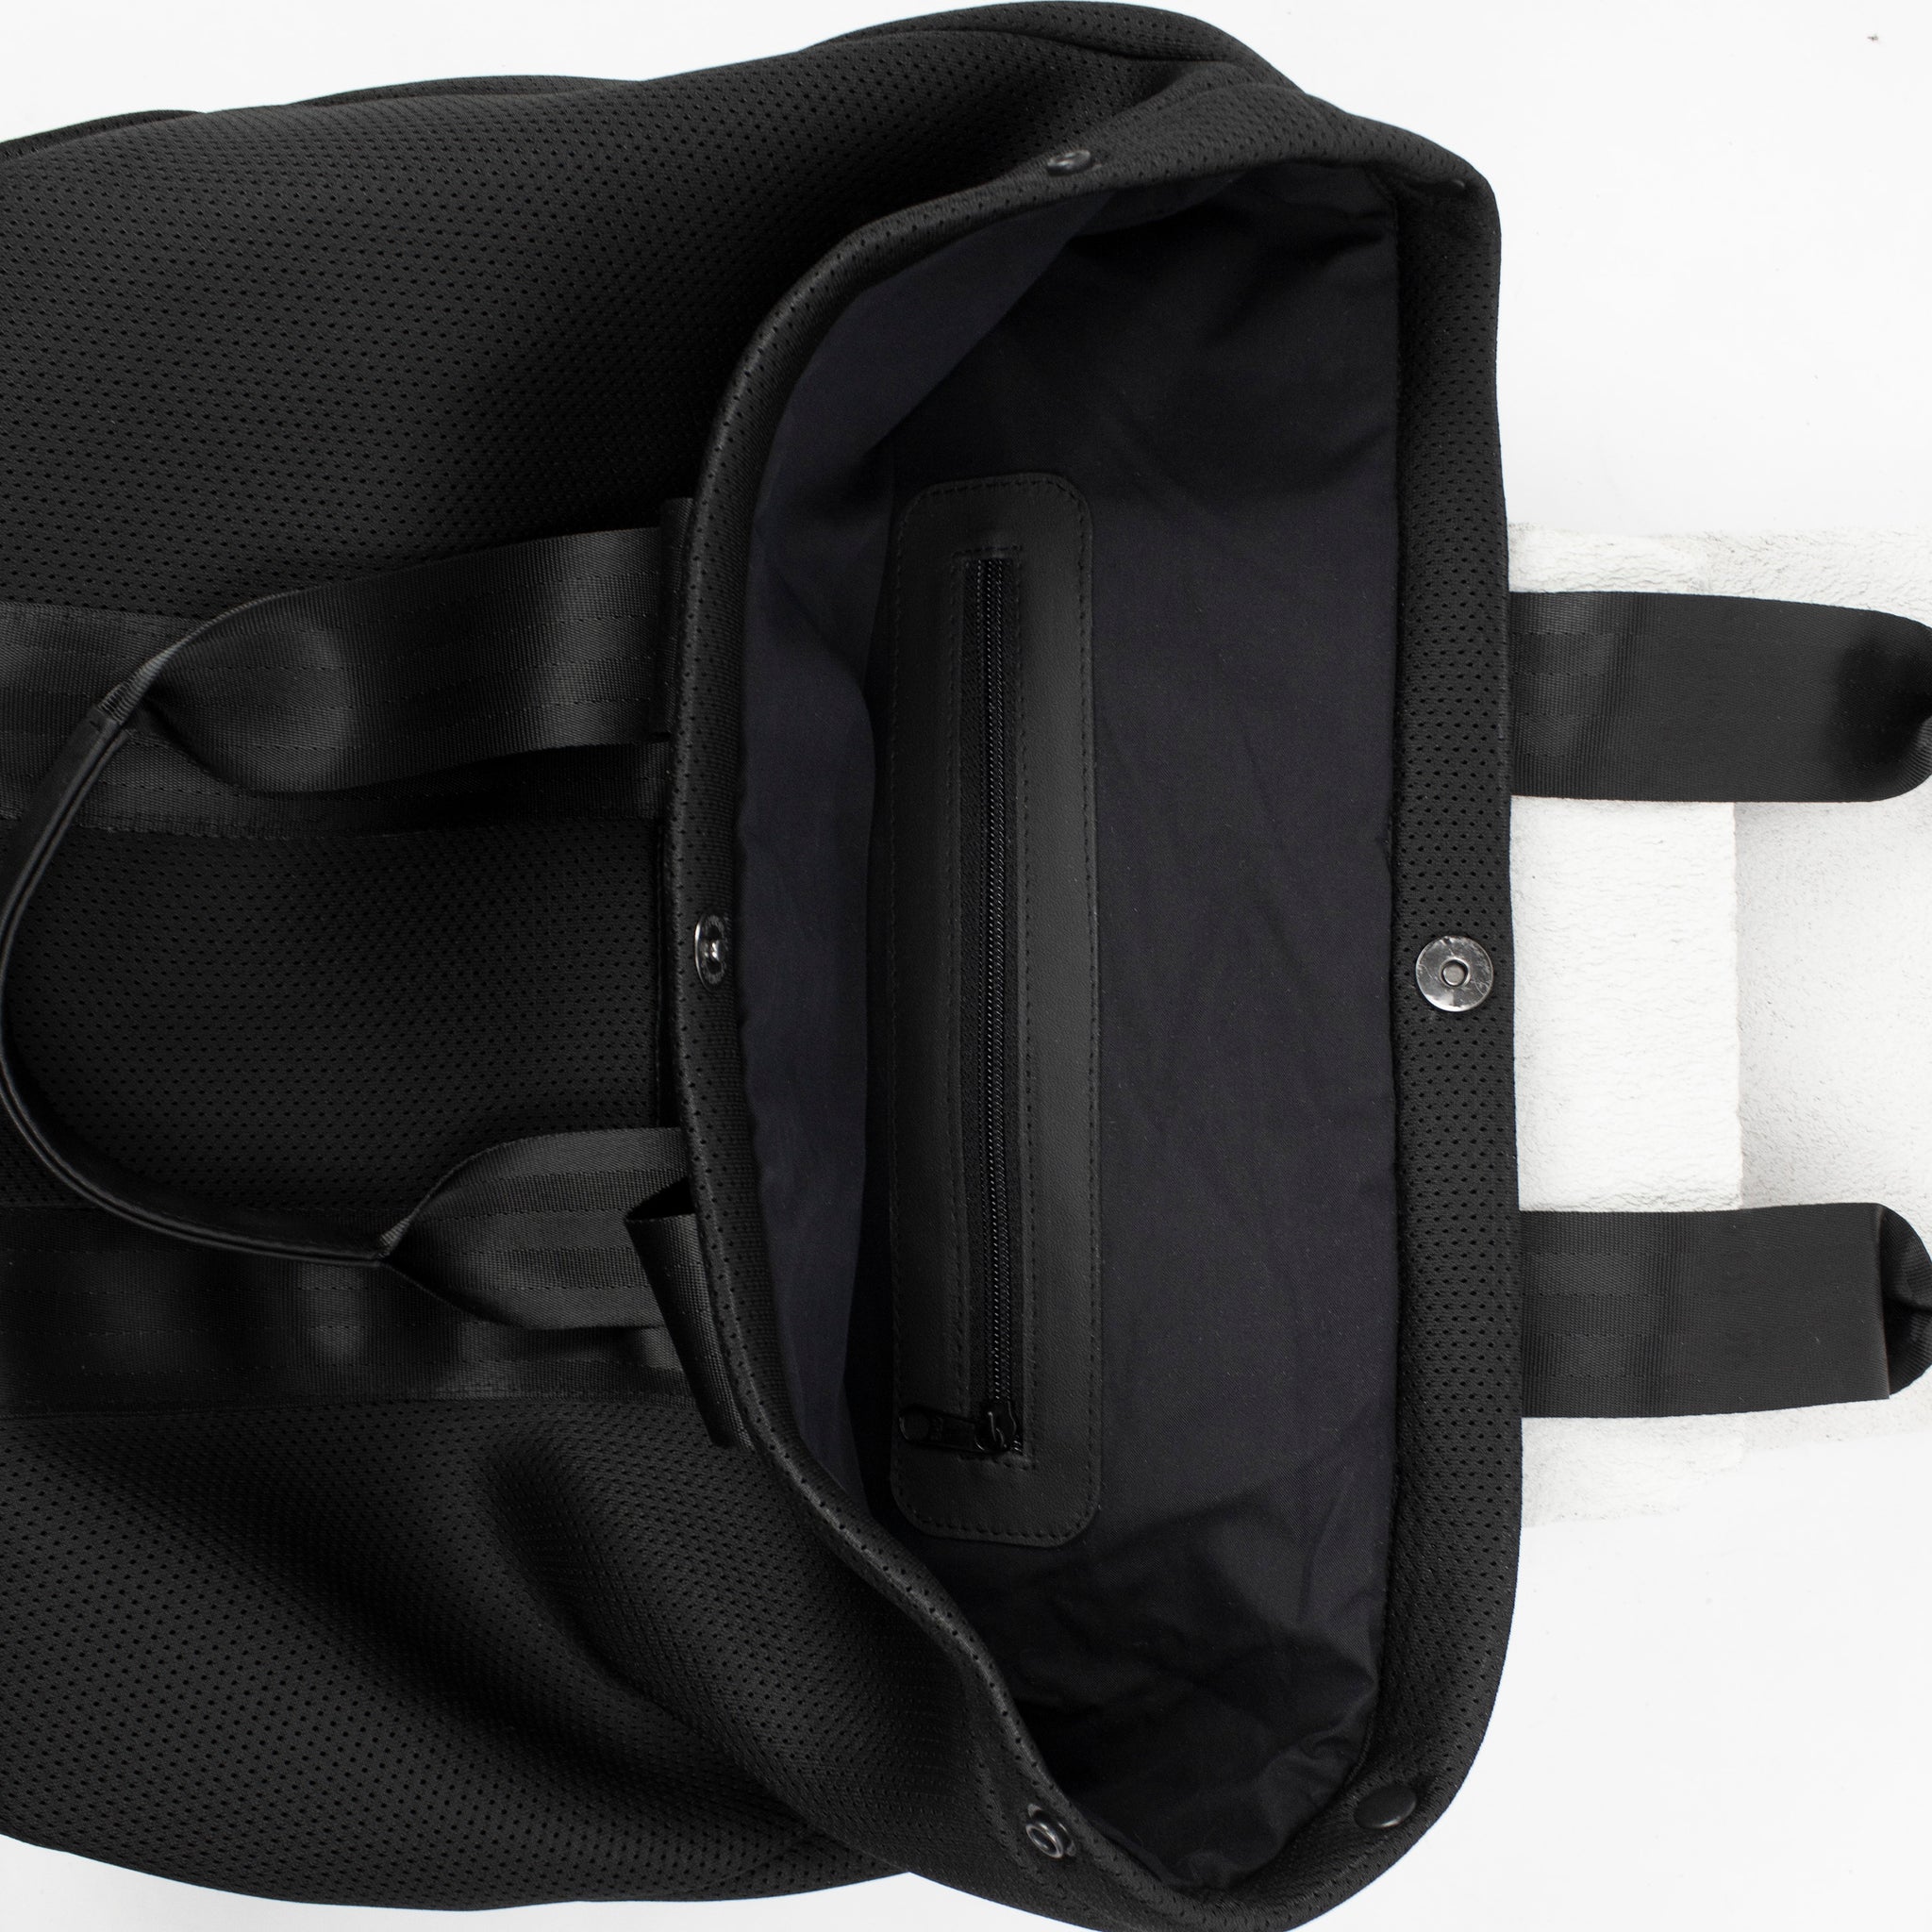 Large-sized neoprene mesh tote bag / shoulder bag